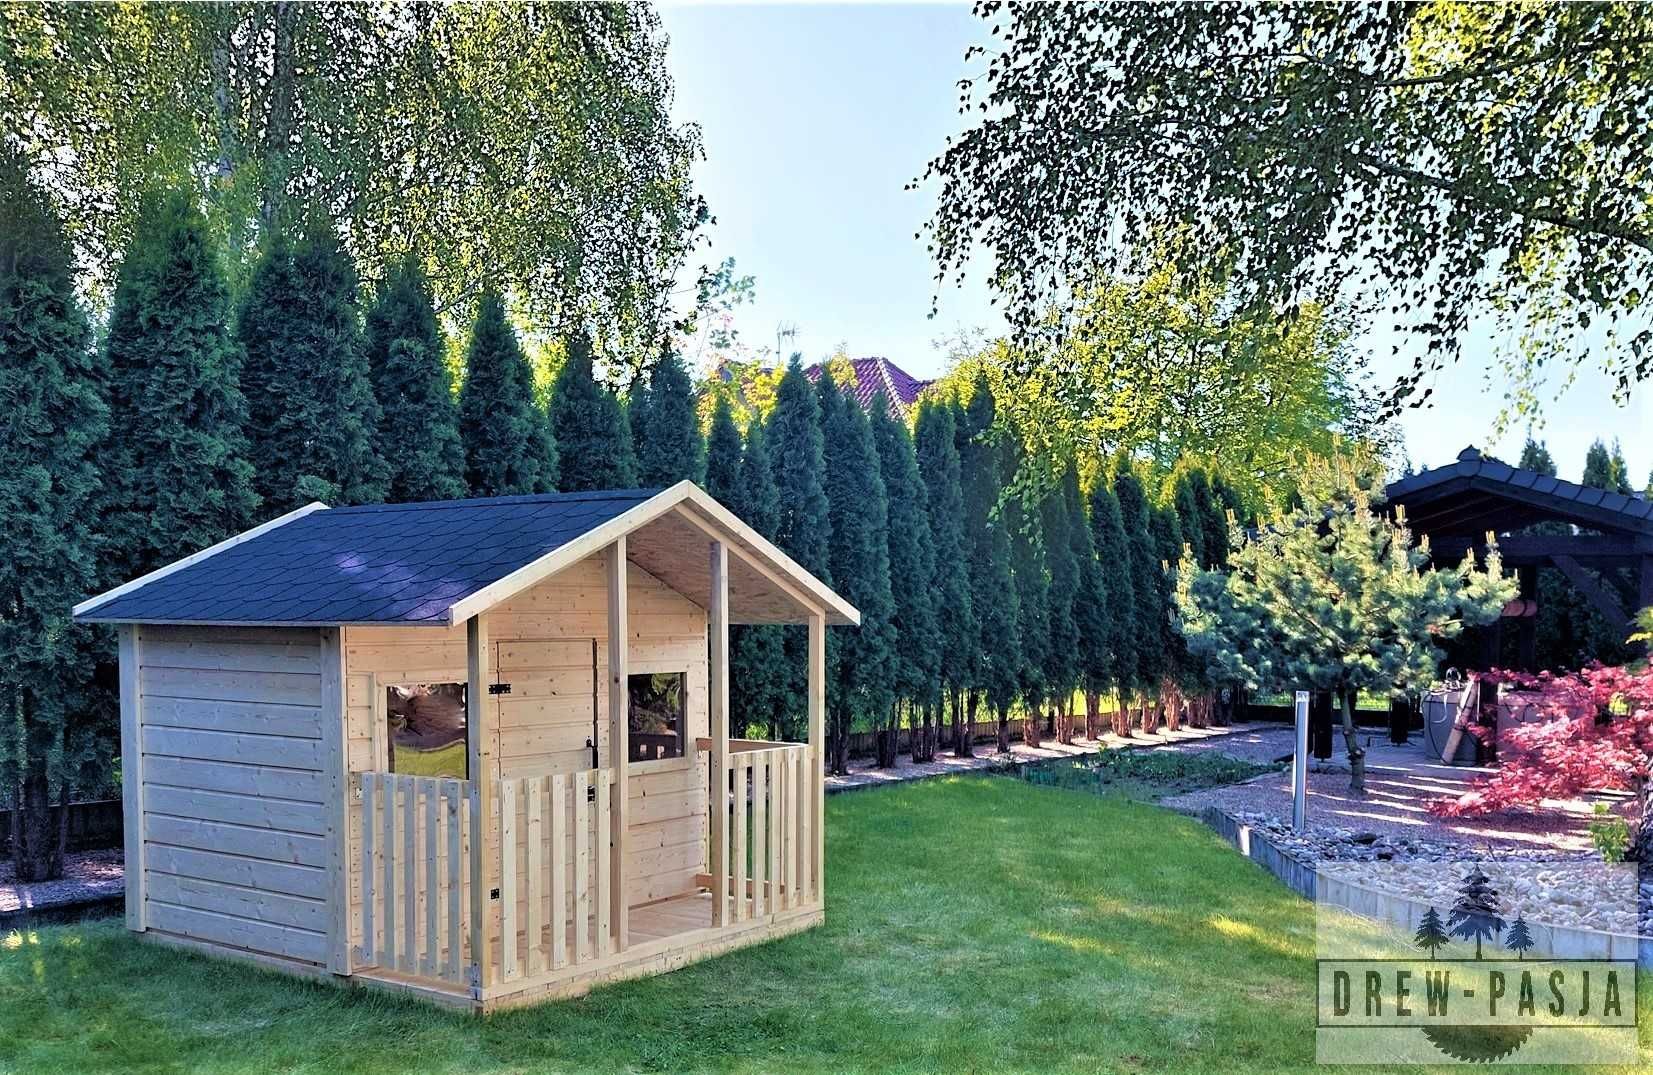 Drewniany domek ogrodowy dla dzieci - Duży domek z tarasem 180 x 200cm